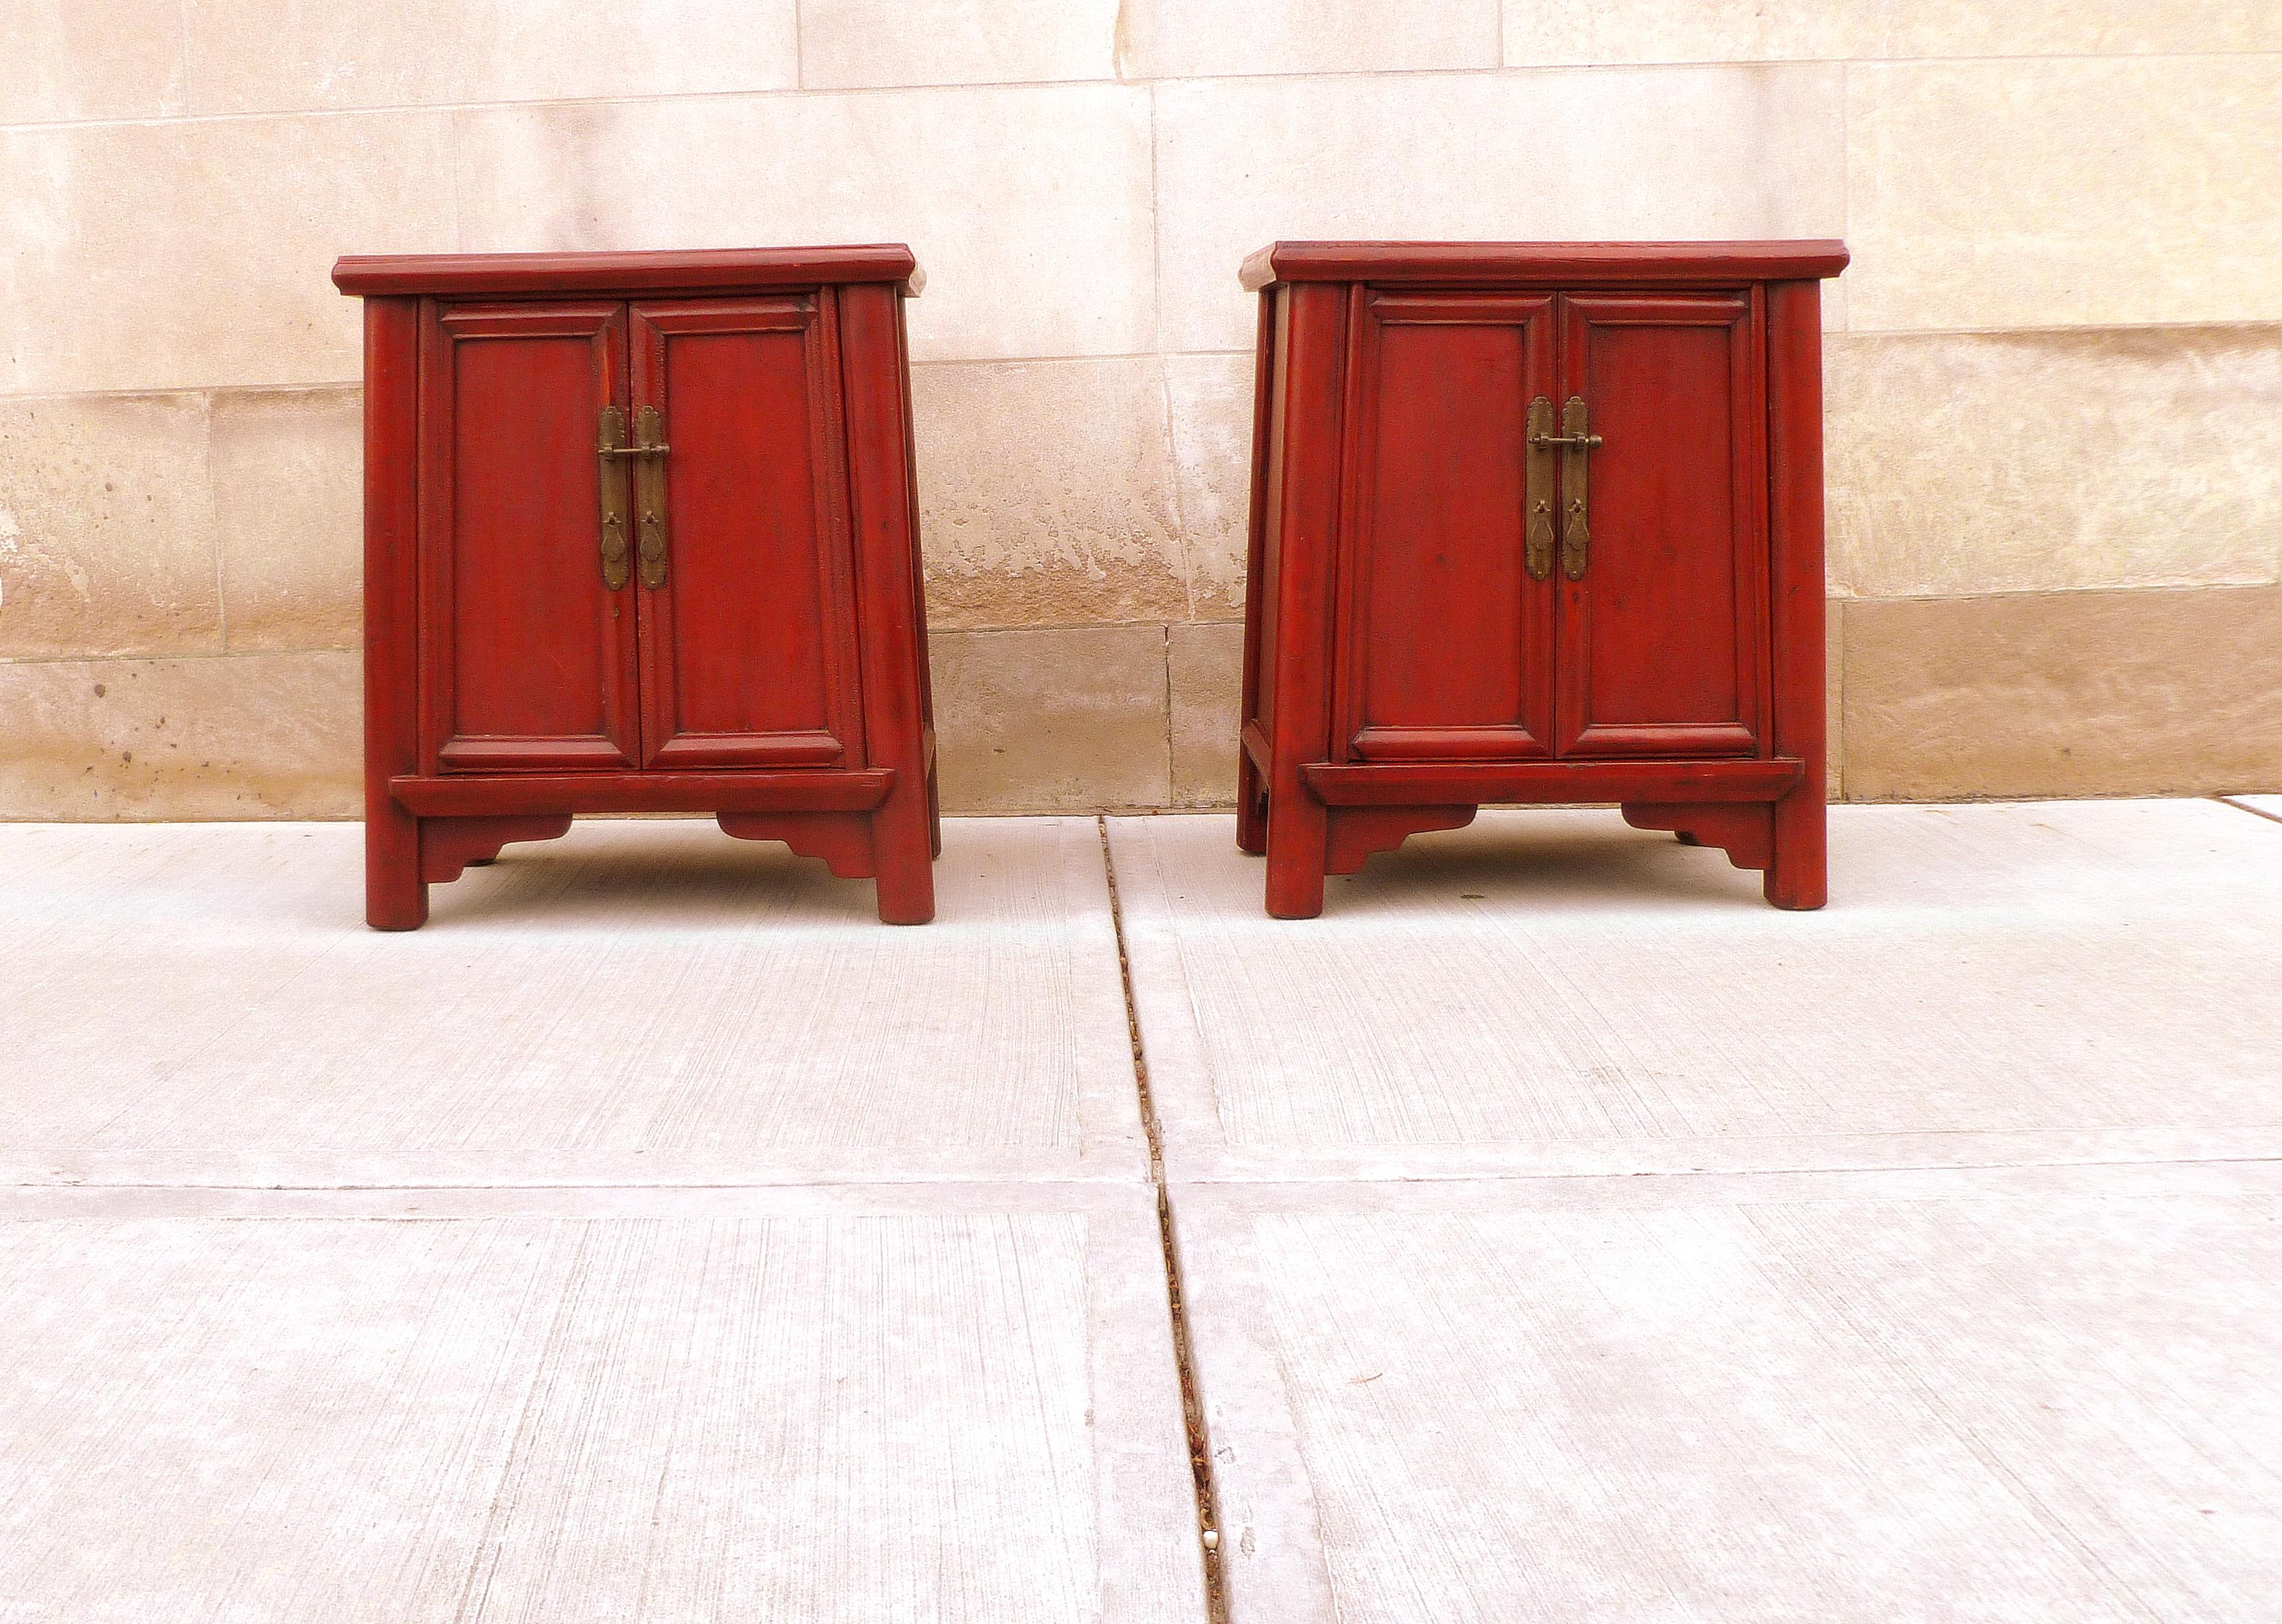 Paar rote Lacktruhen mit offenen Türen und herausnehmbarem Einlegeboden auf jeder Truhe, eine Schublade in jeder Truhe.